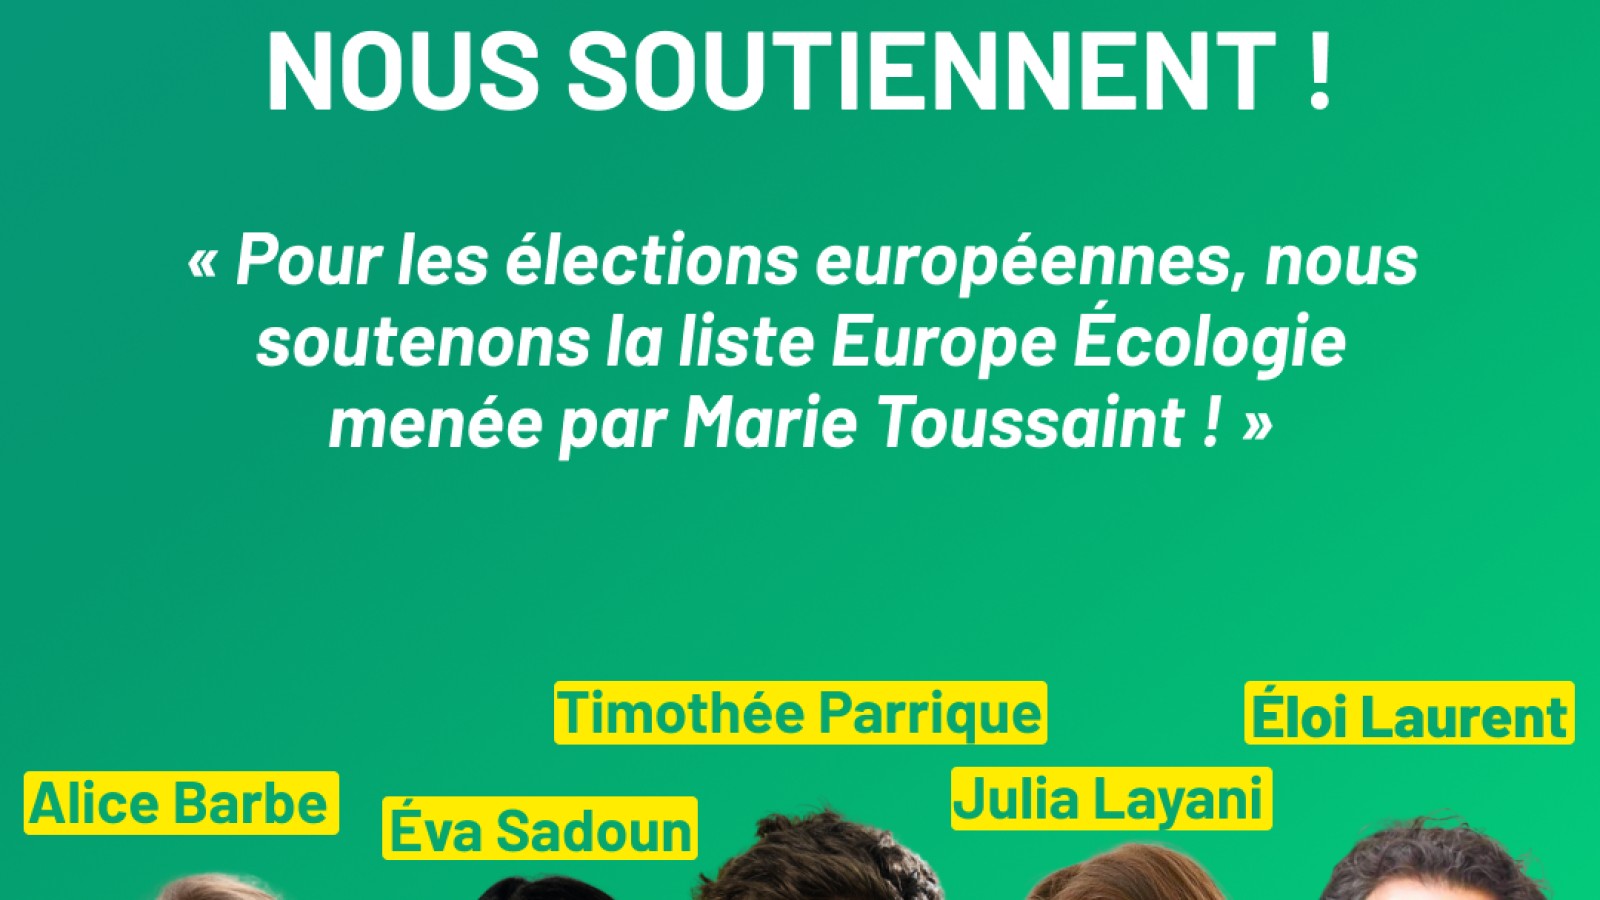 Illustration de l'actualité Pour les élections européennes, nous soutenons Marie Toussaint et les écologistes !